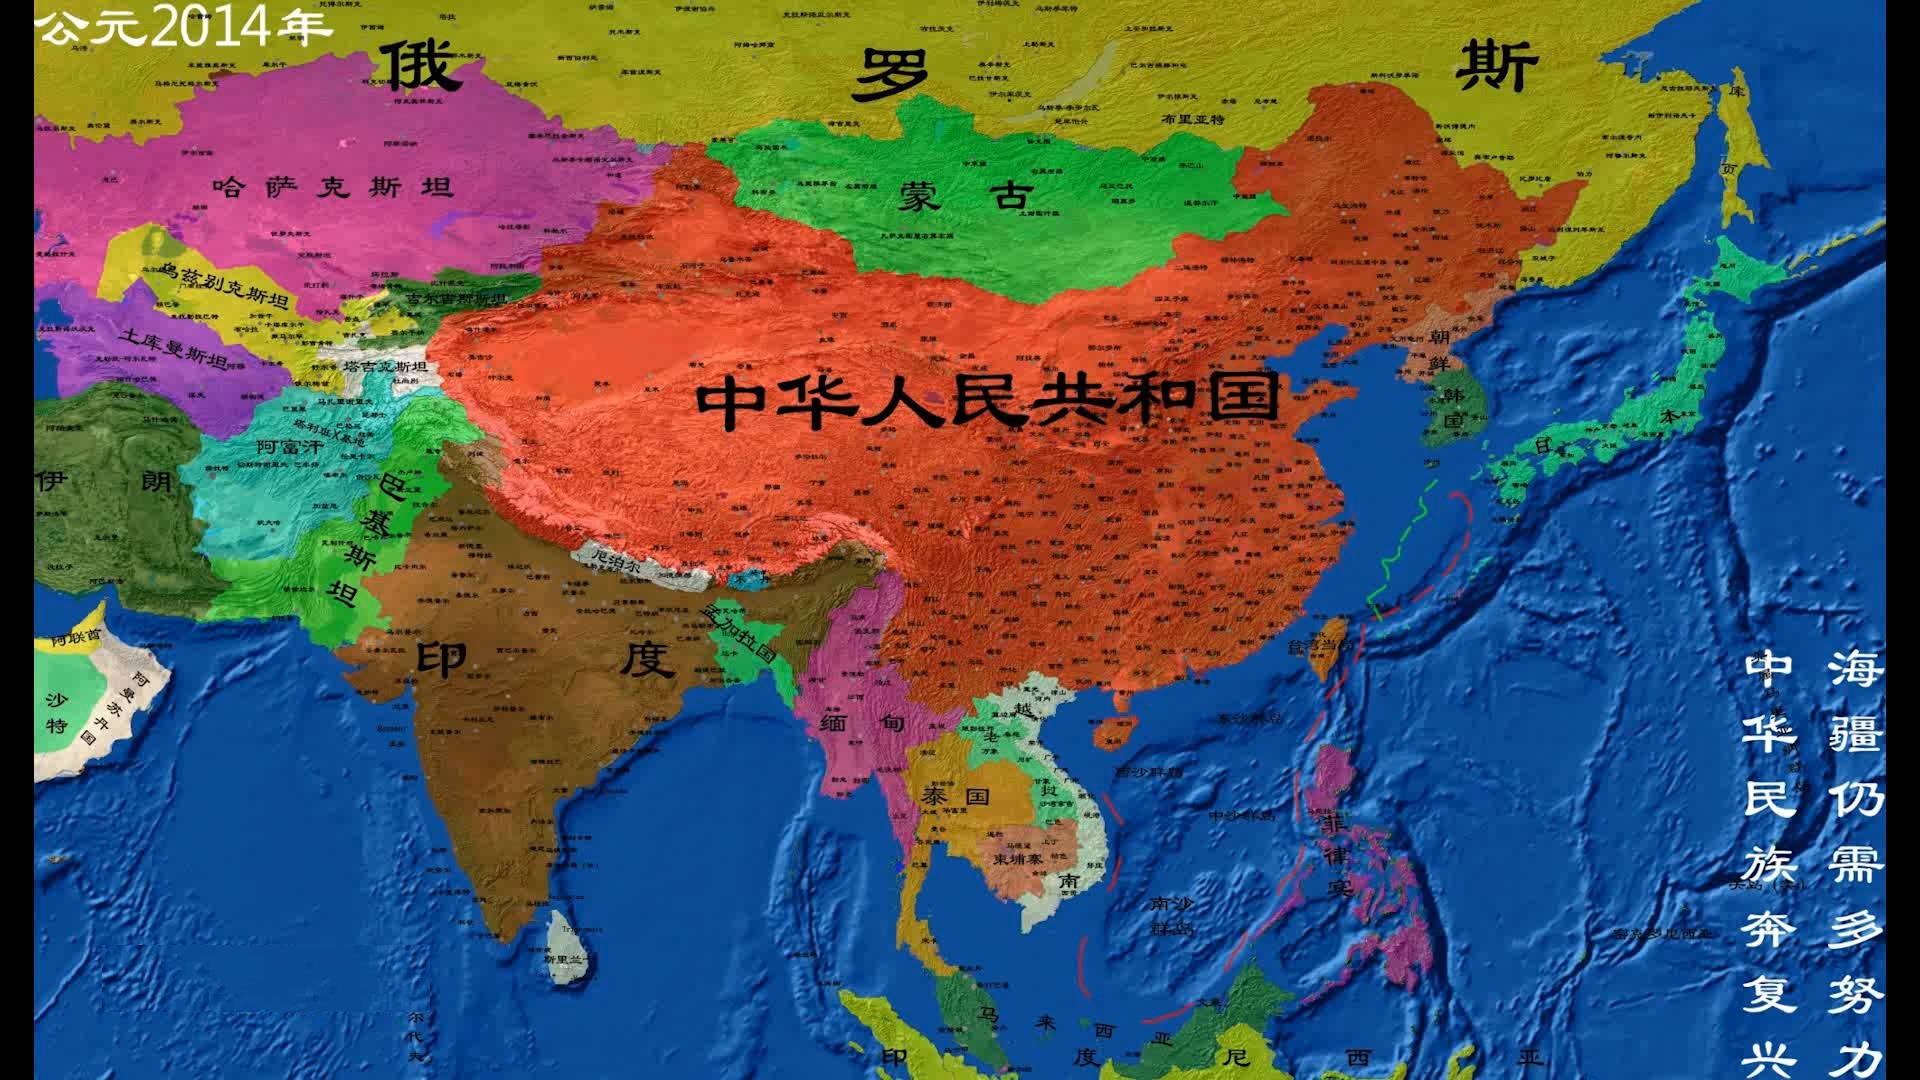 中国历史地图[01_34_36][20141111-142332-0].jpg图片